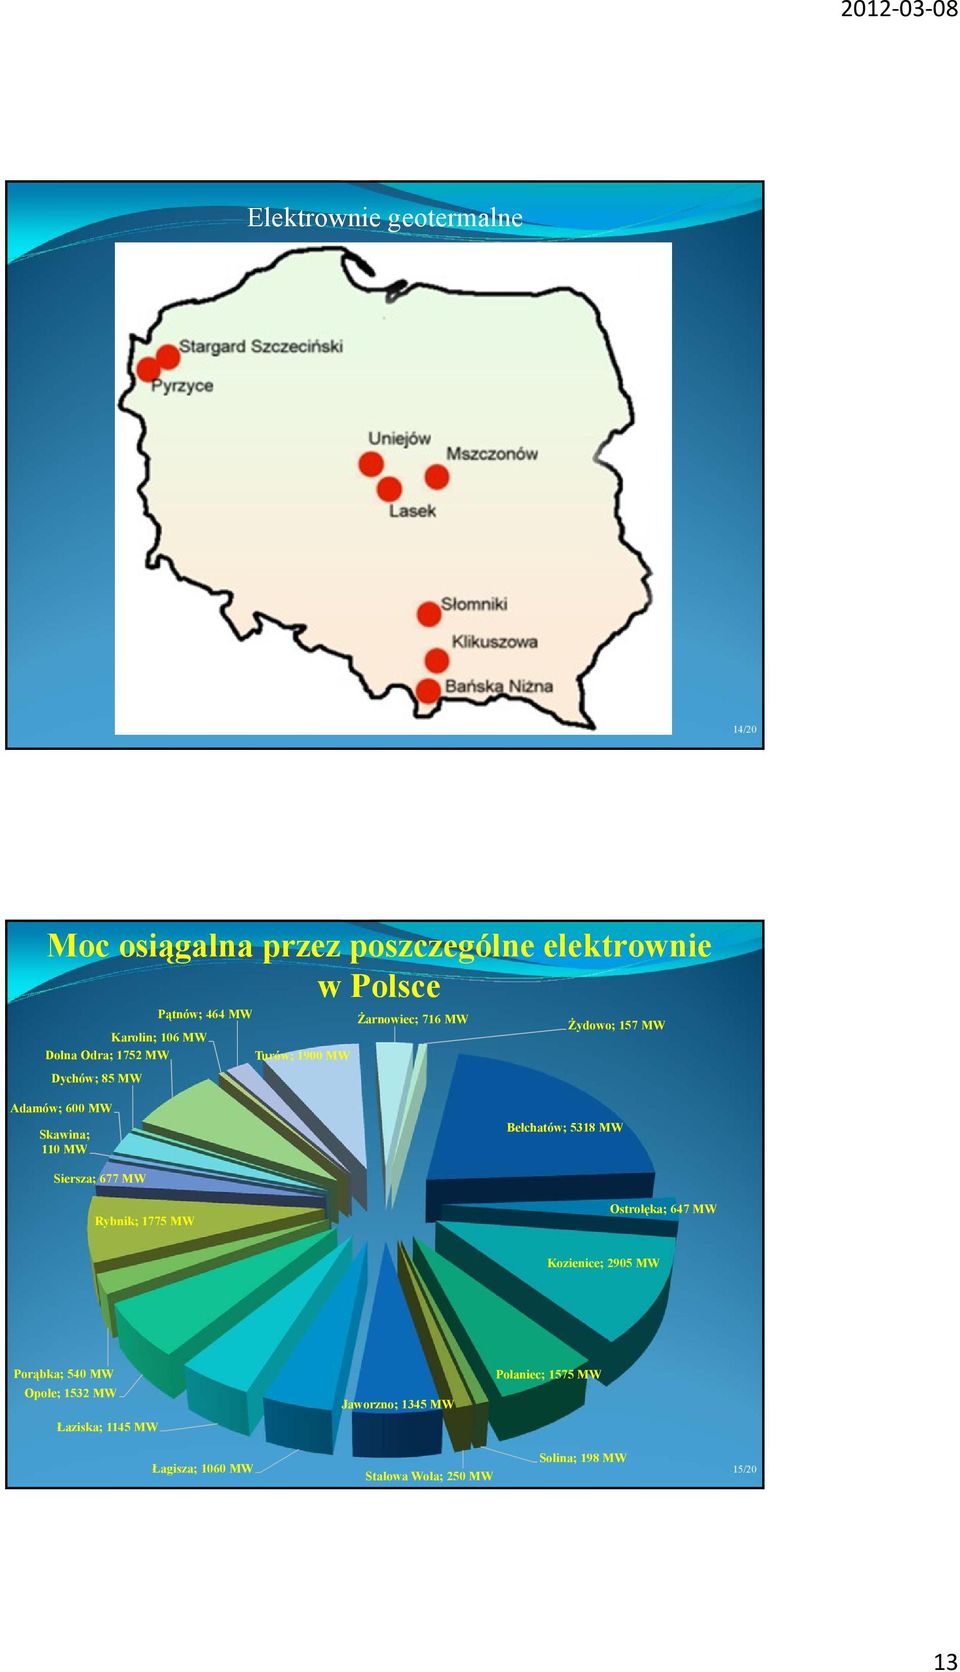 Bełchatów; 5318 MW Siersza; 677 MW Rybnik; 1775 MW Ostrołęka; 647 MW Kozienice; 2905 MW Porąbka; 540 MW Opole; 1532